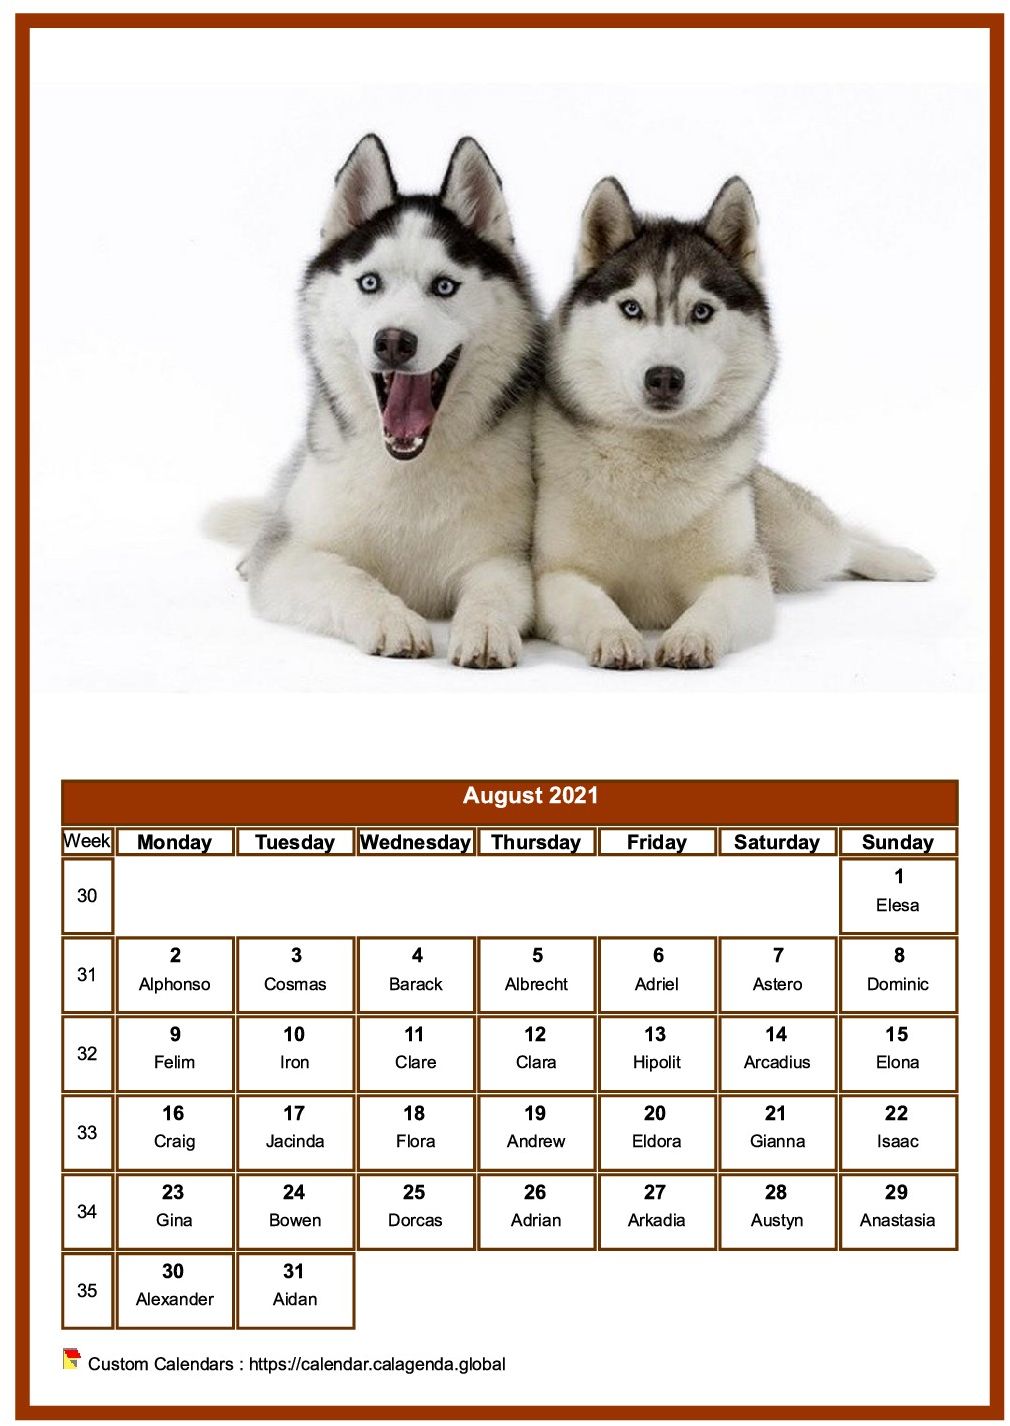 Calendar August 2021 dogs